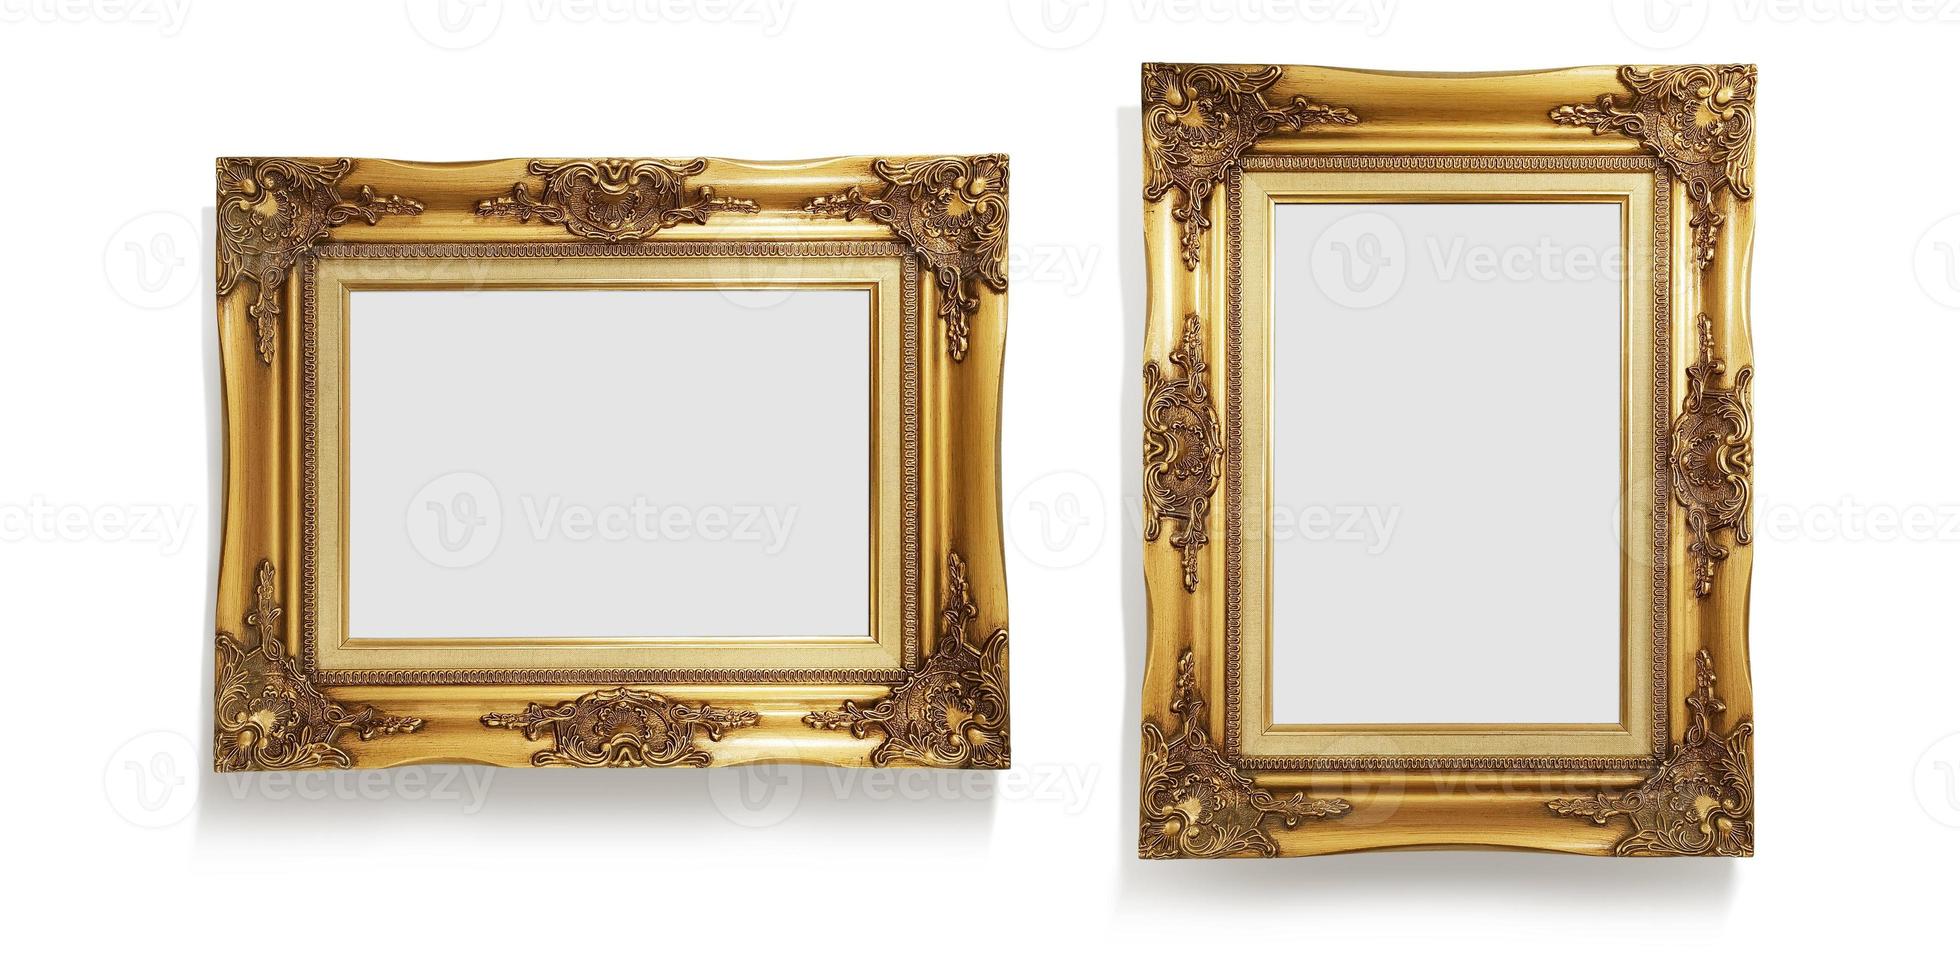 marco de fotos antiguo dorado aislado en blanco